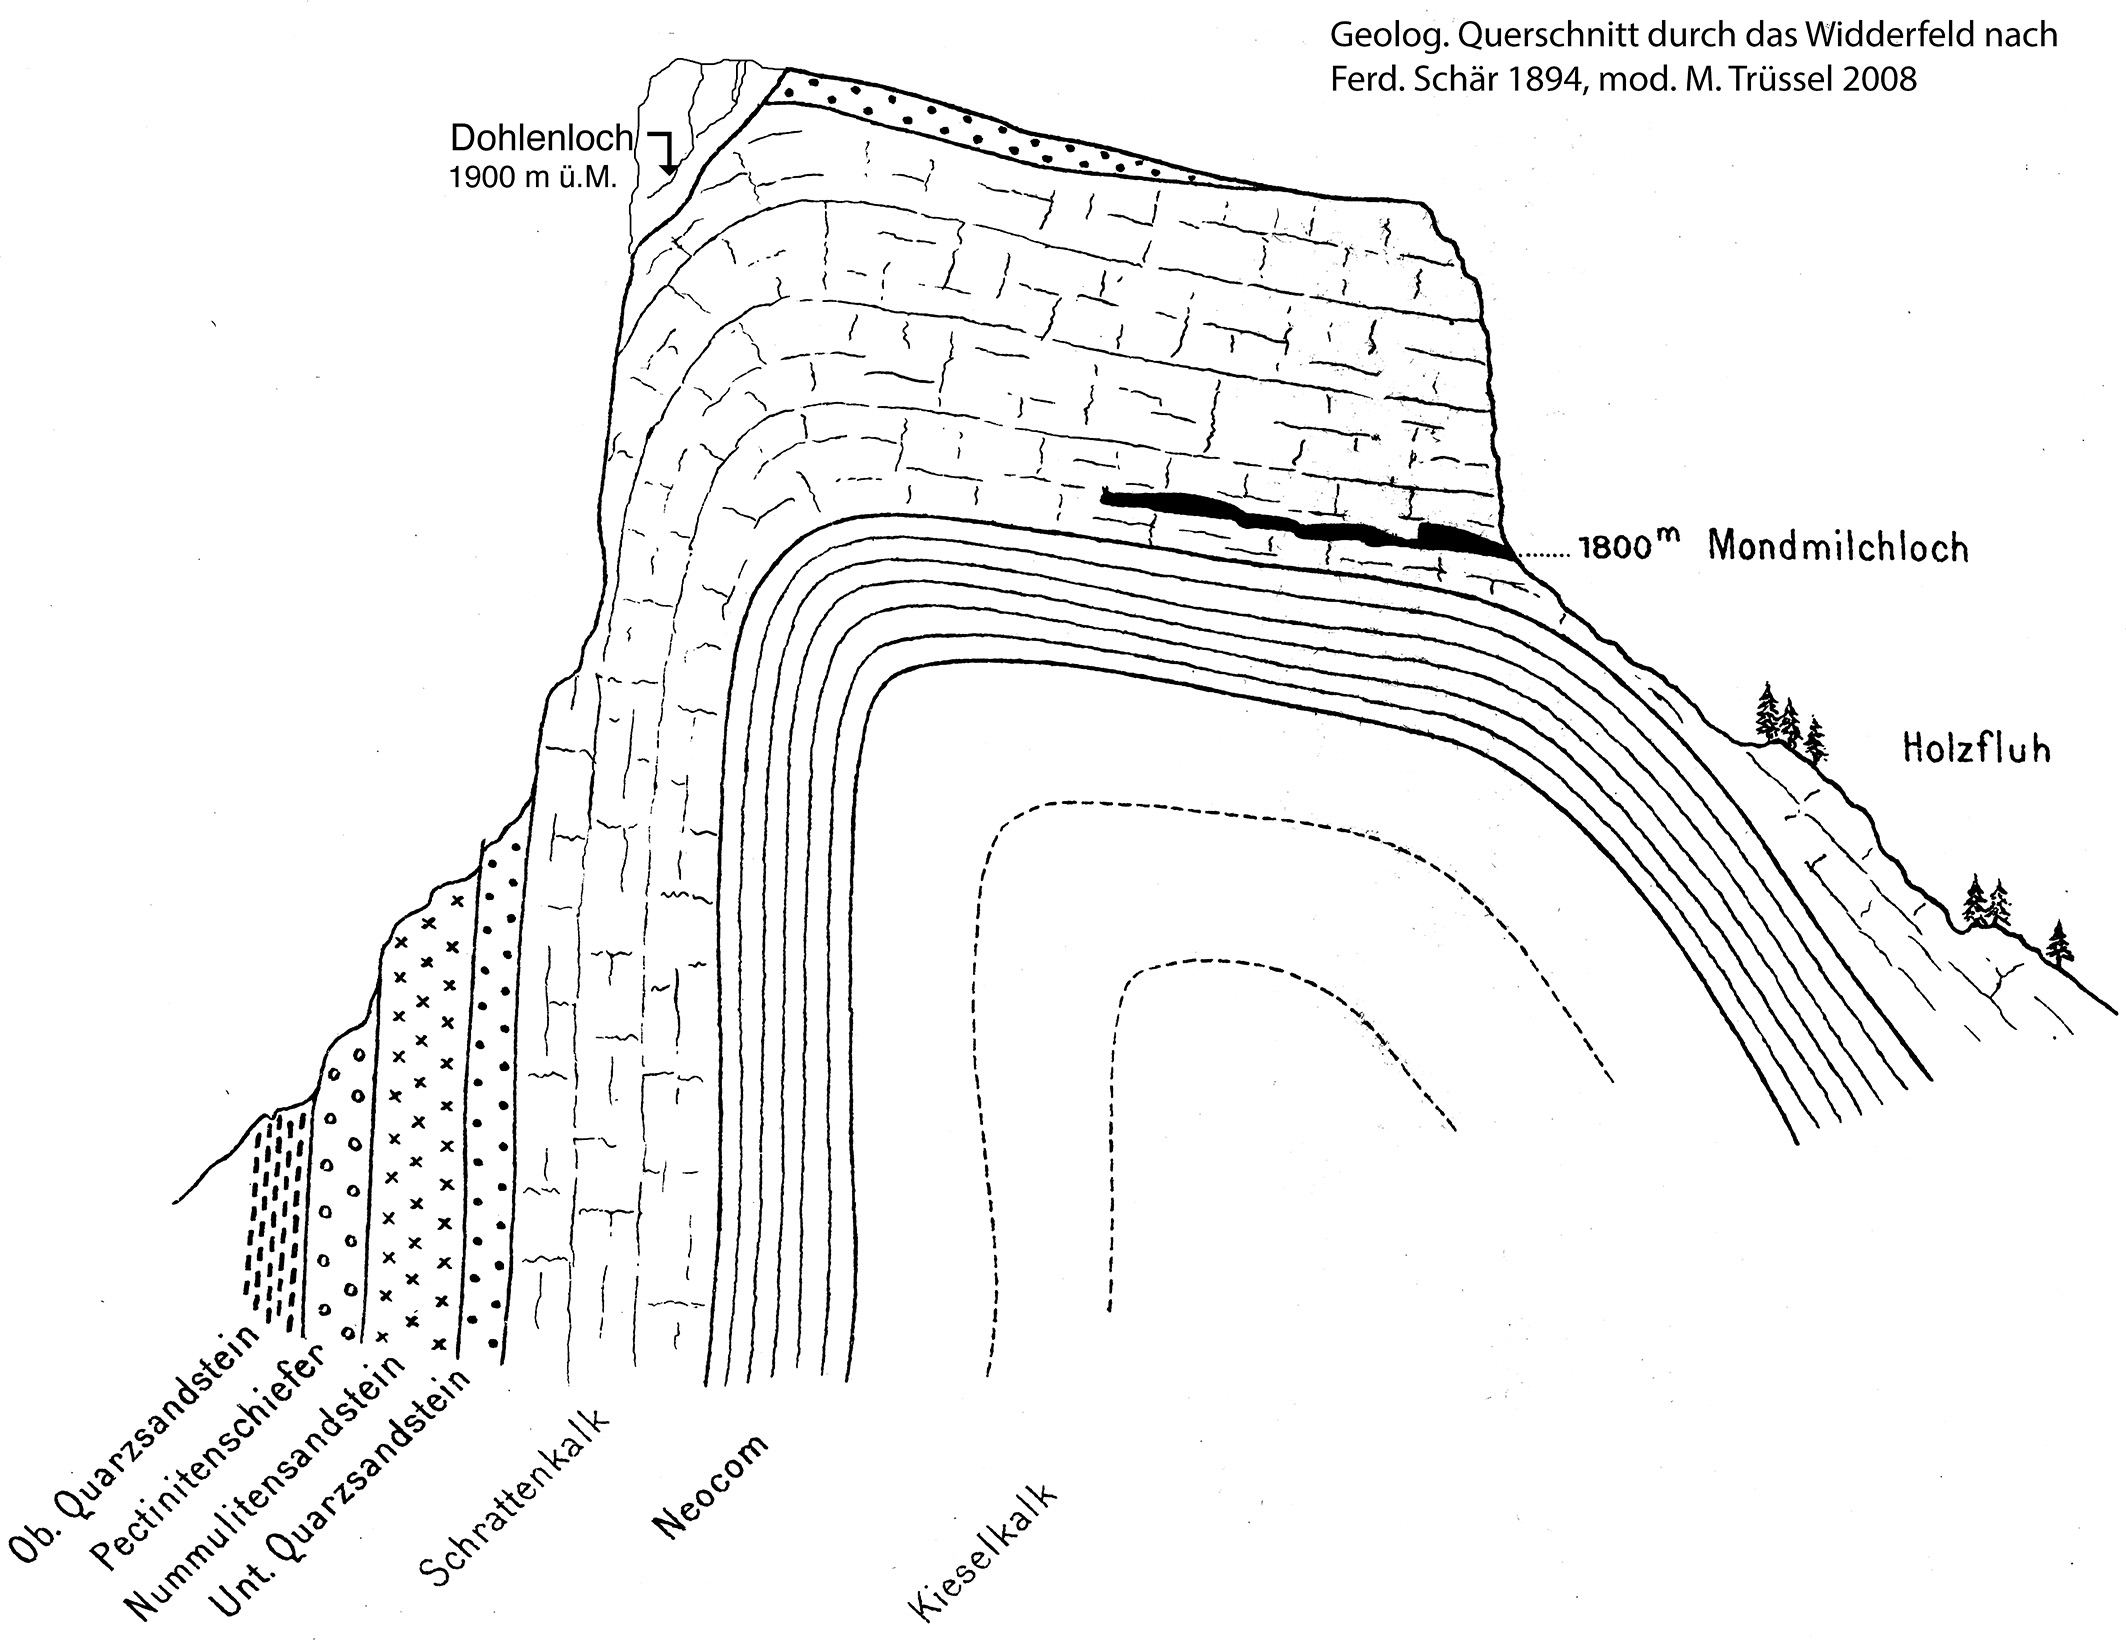 Geologischer Schnitt durchs Widderfeld mit dem Mondmilchloch im Süden und dem Dohlenloch im Norden.